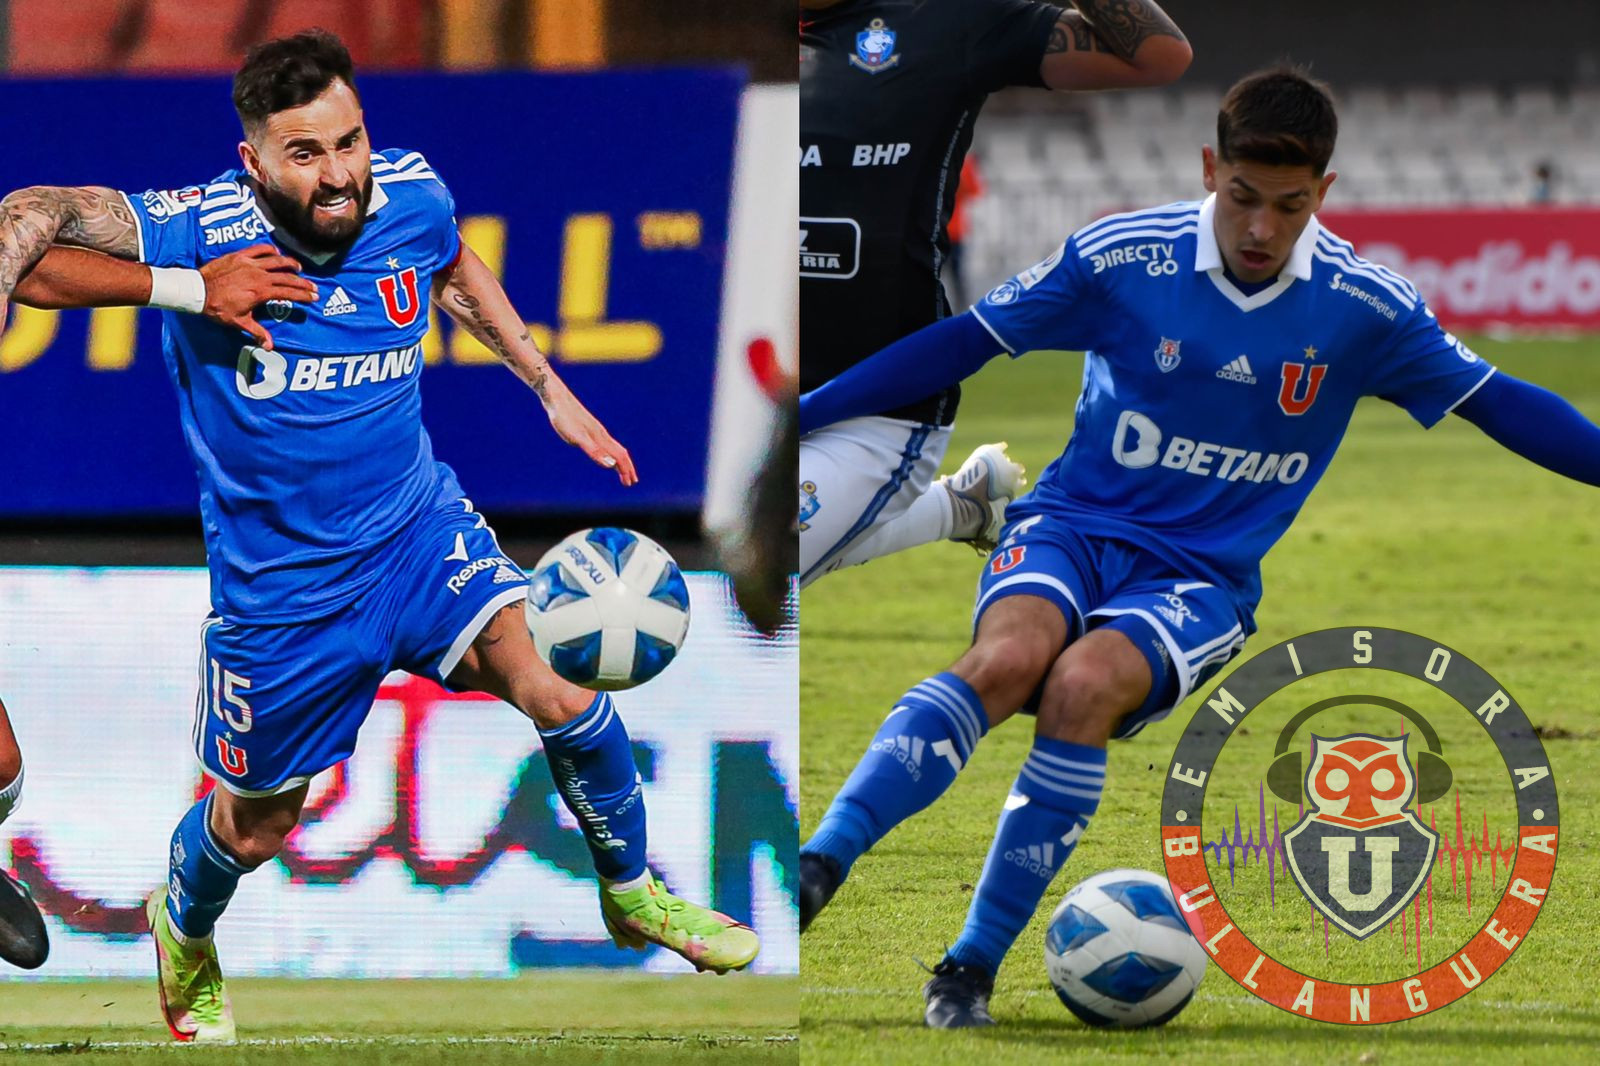 Mauricio Morales y Luis Felipe Gallegos entrenaron con normalidad y están a disposición para Copa Chile